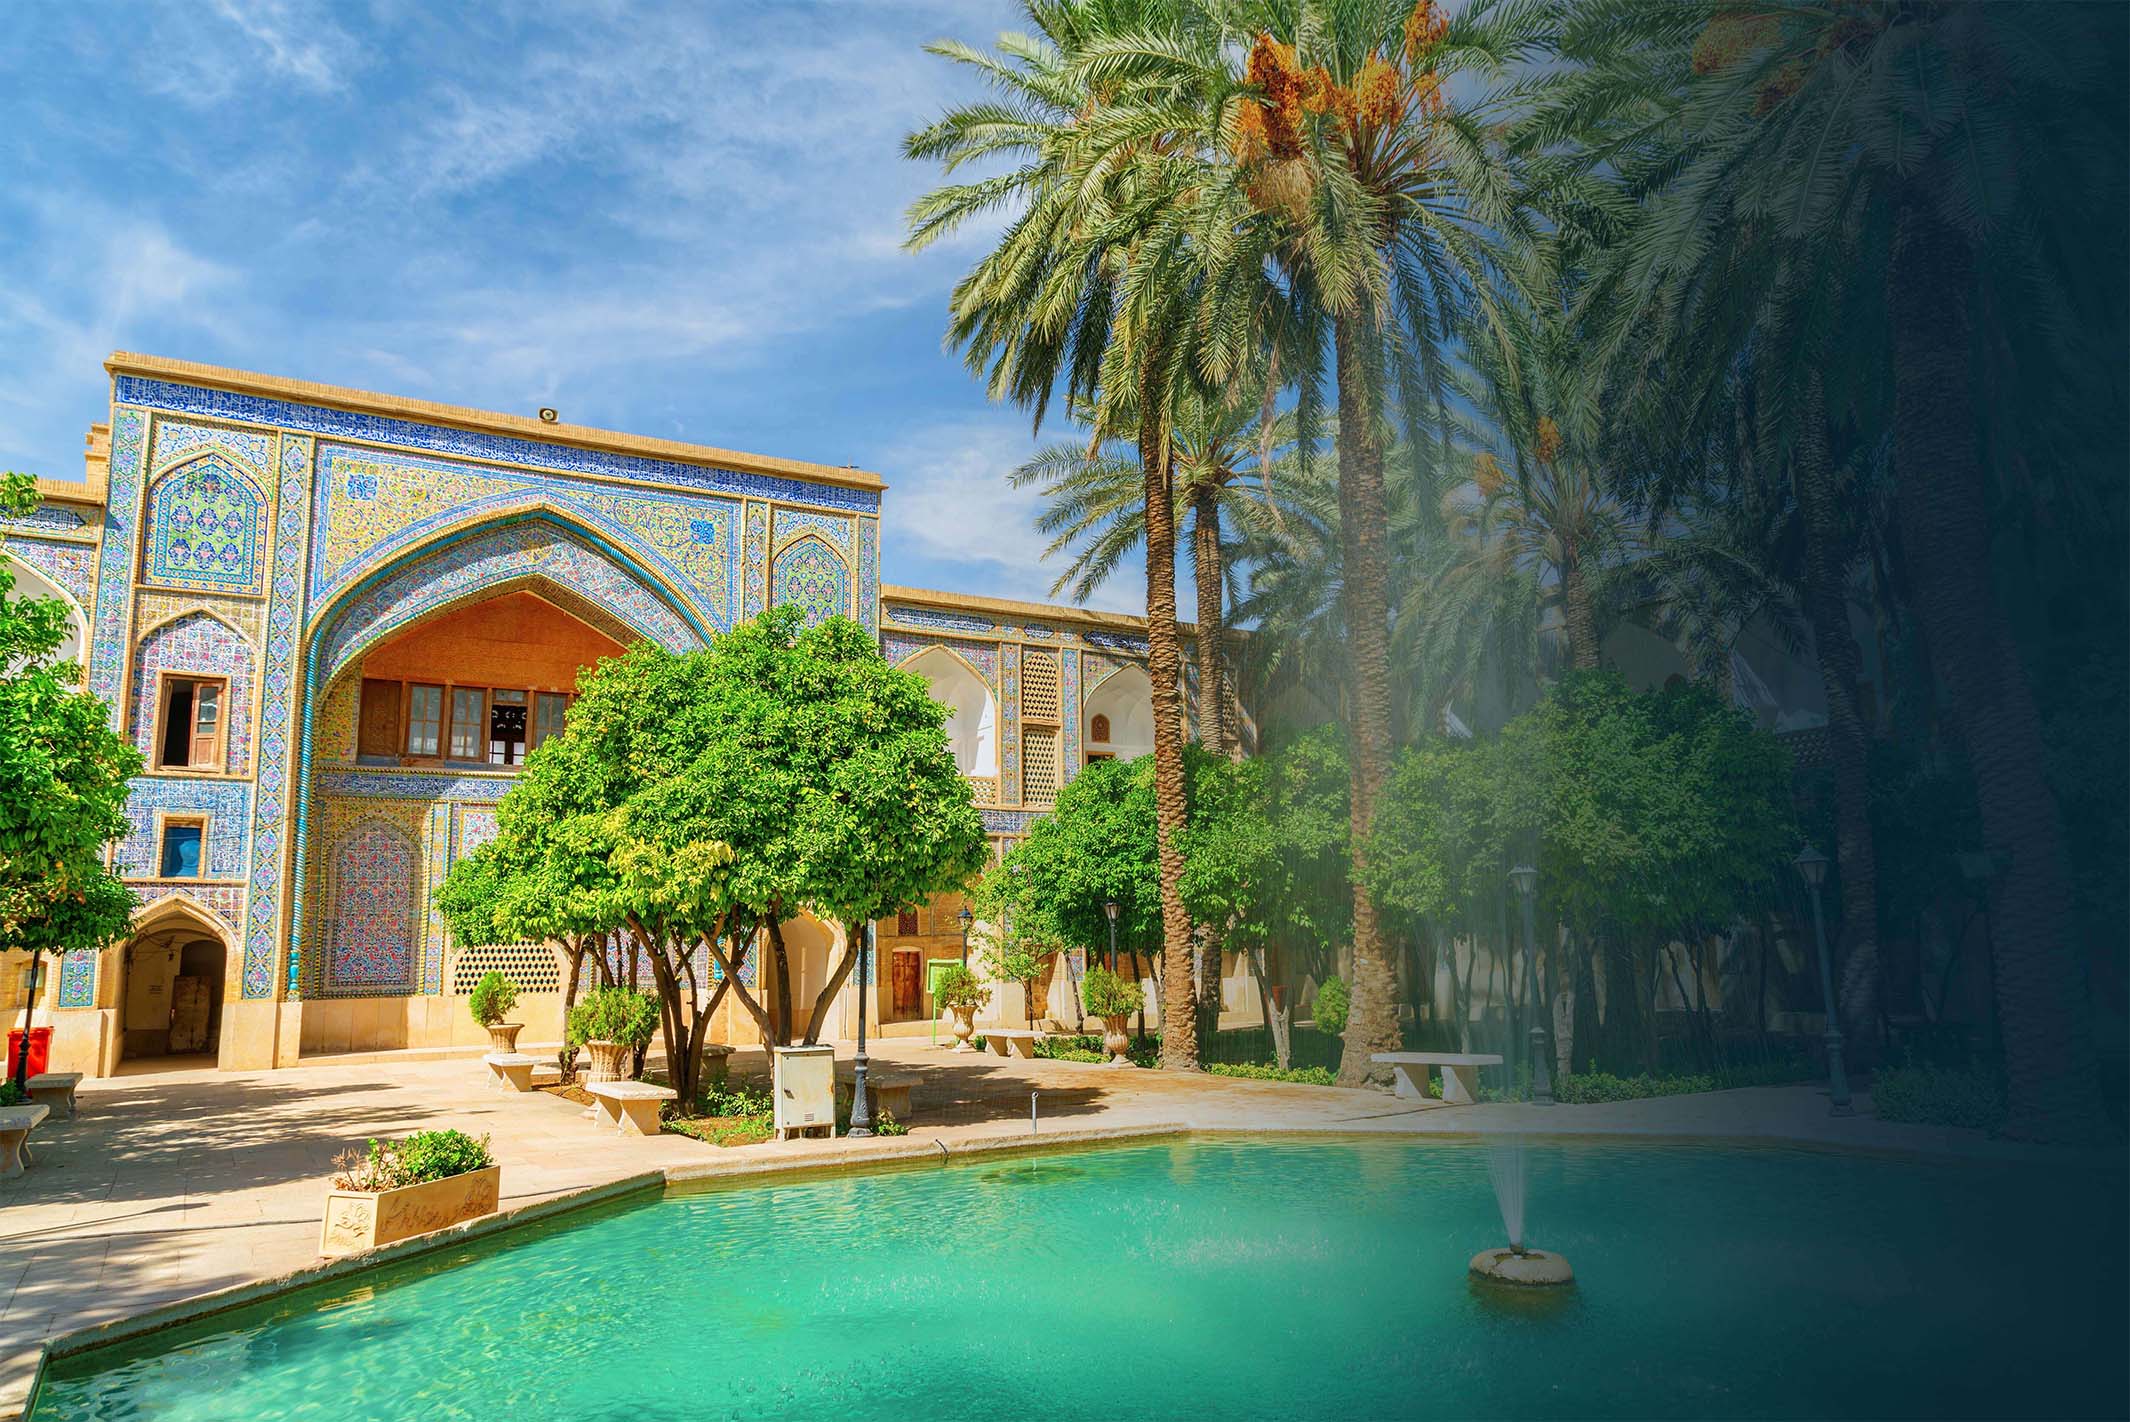 Ein Bild von einer persischen Villa, umgeben von einem Teich und vielen Palmen.